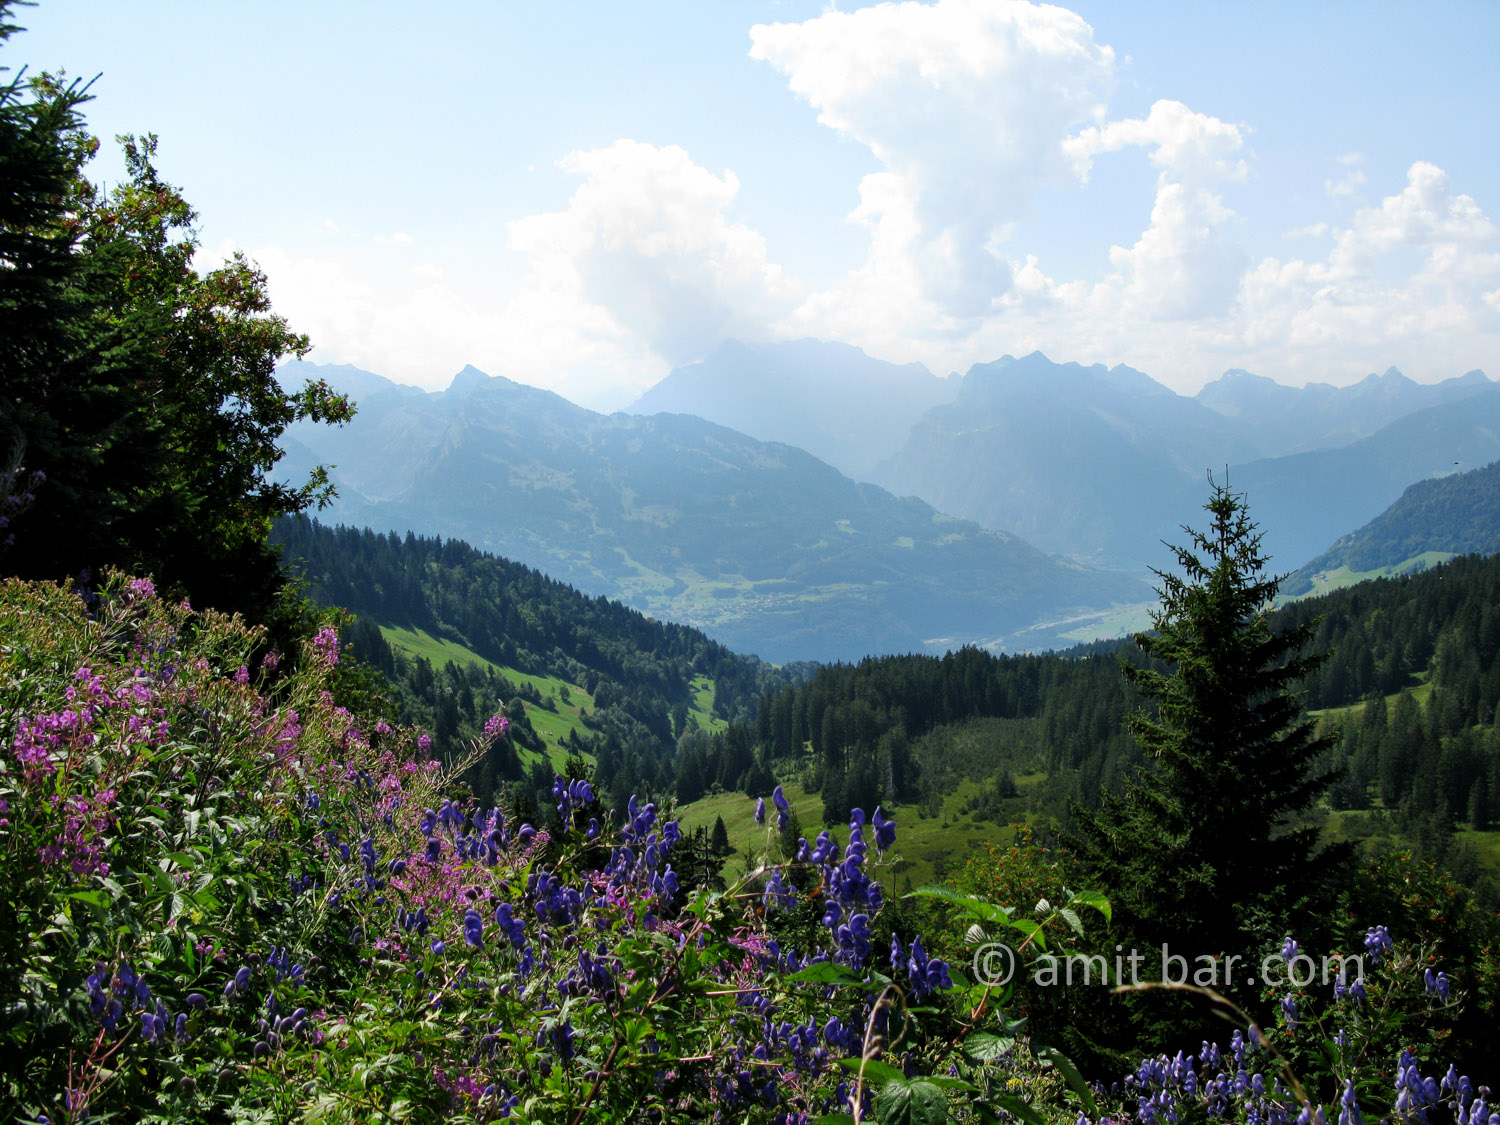 The mountains around Amden, Switzerland